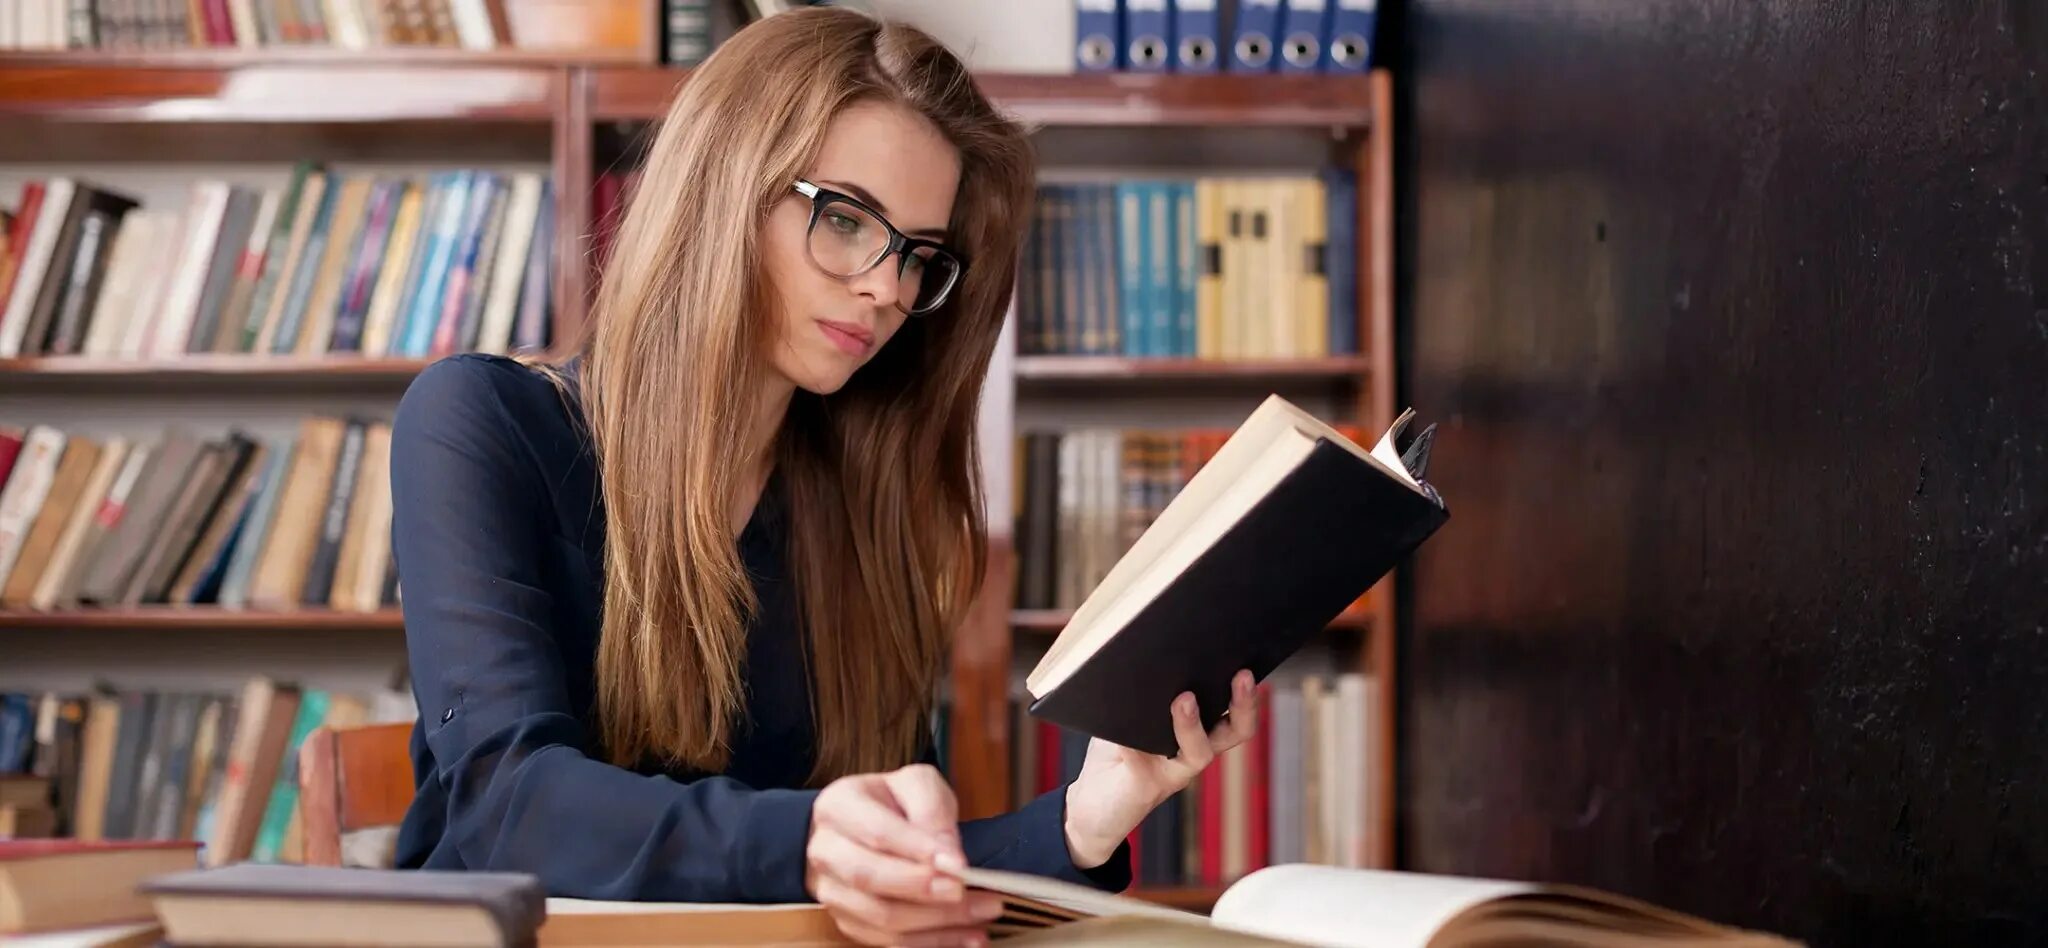 Его студентка читать. Скромная девушка студент. Девушка студентка в очках с учебниками. Подготовка к экзаменам в библиотеке. Подготовка к экзаменам Эстетика.